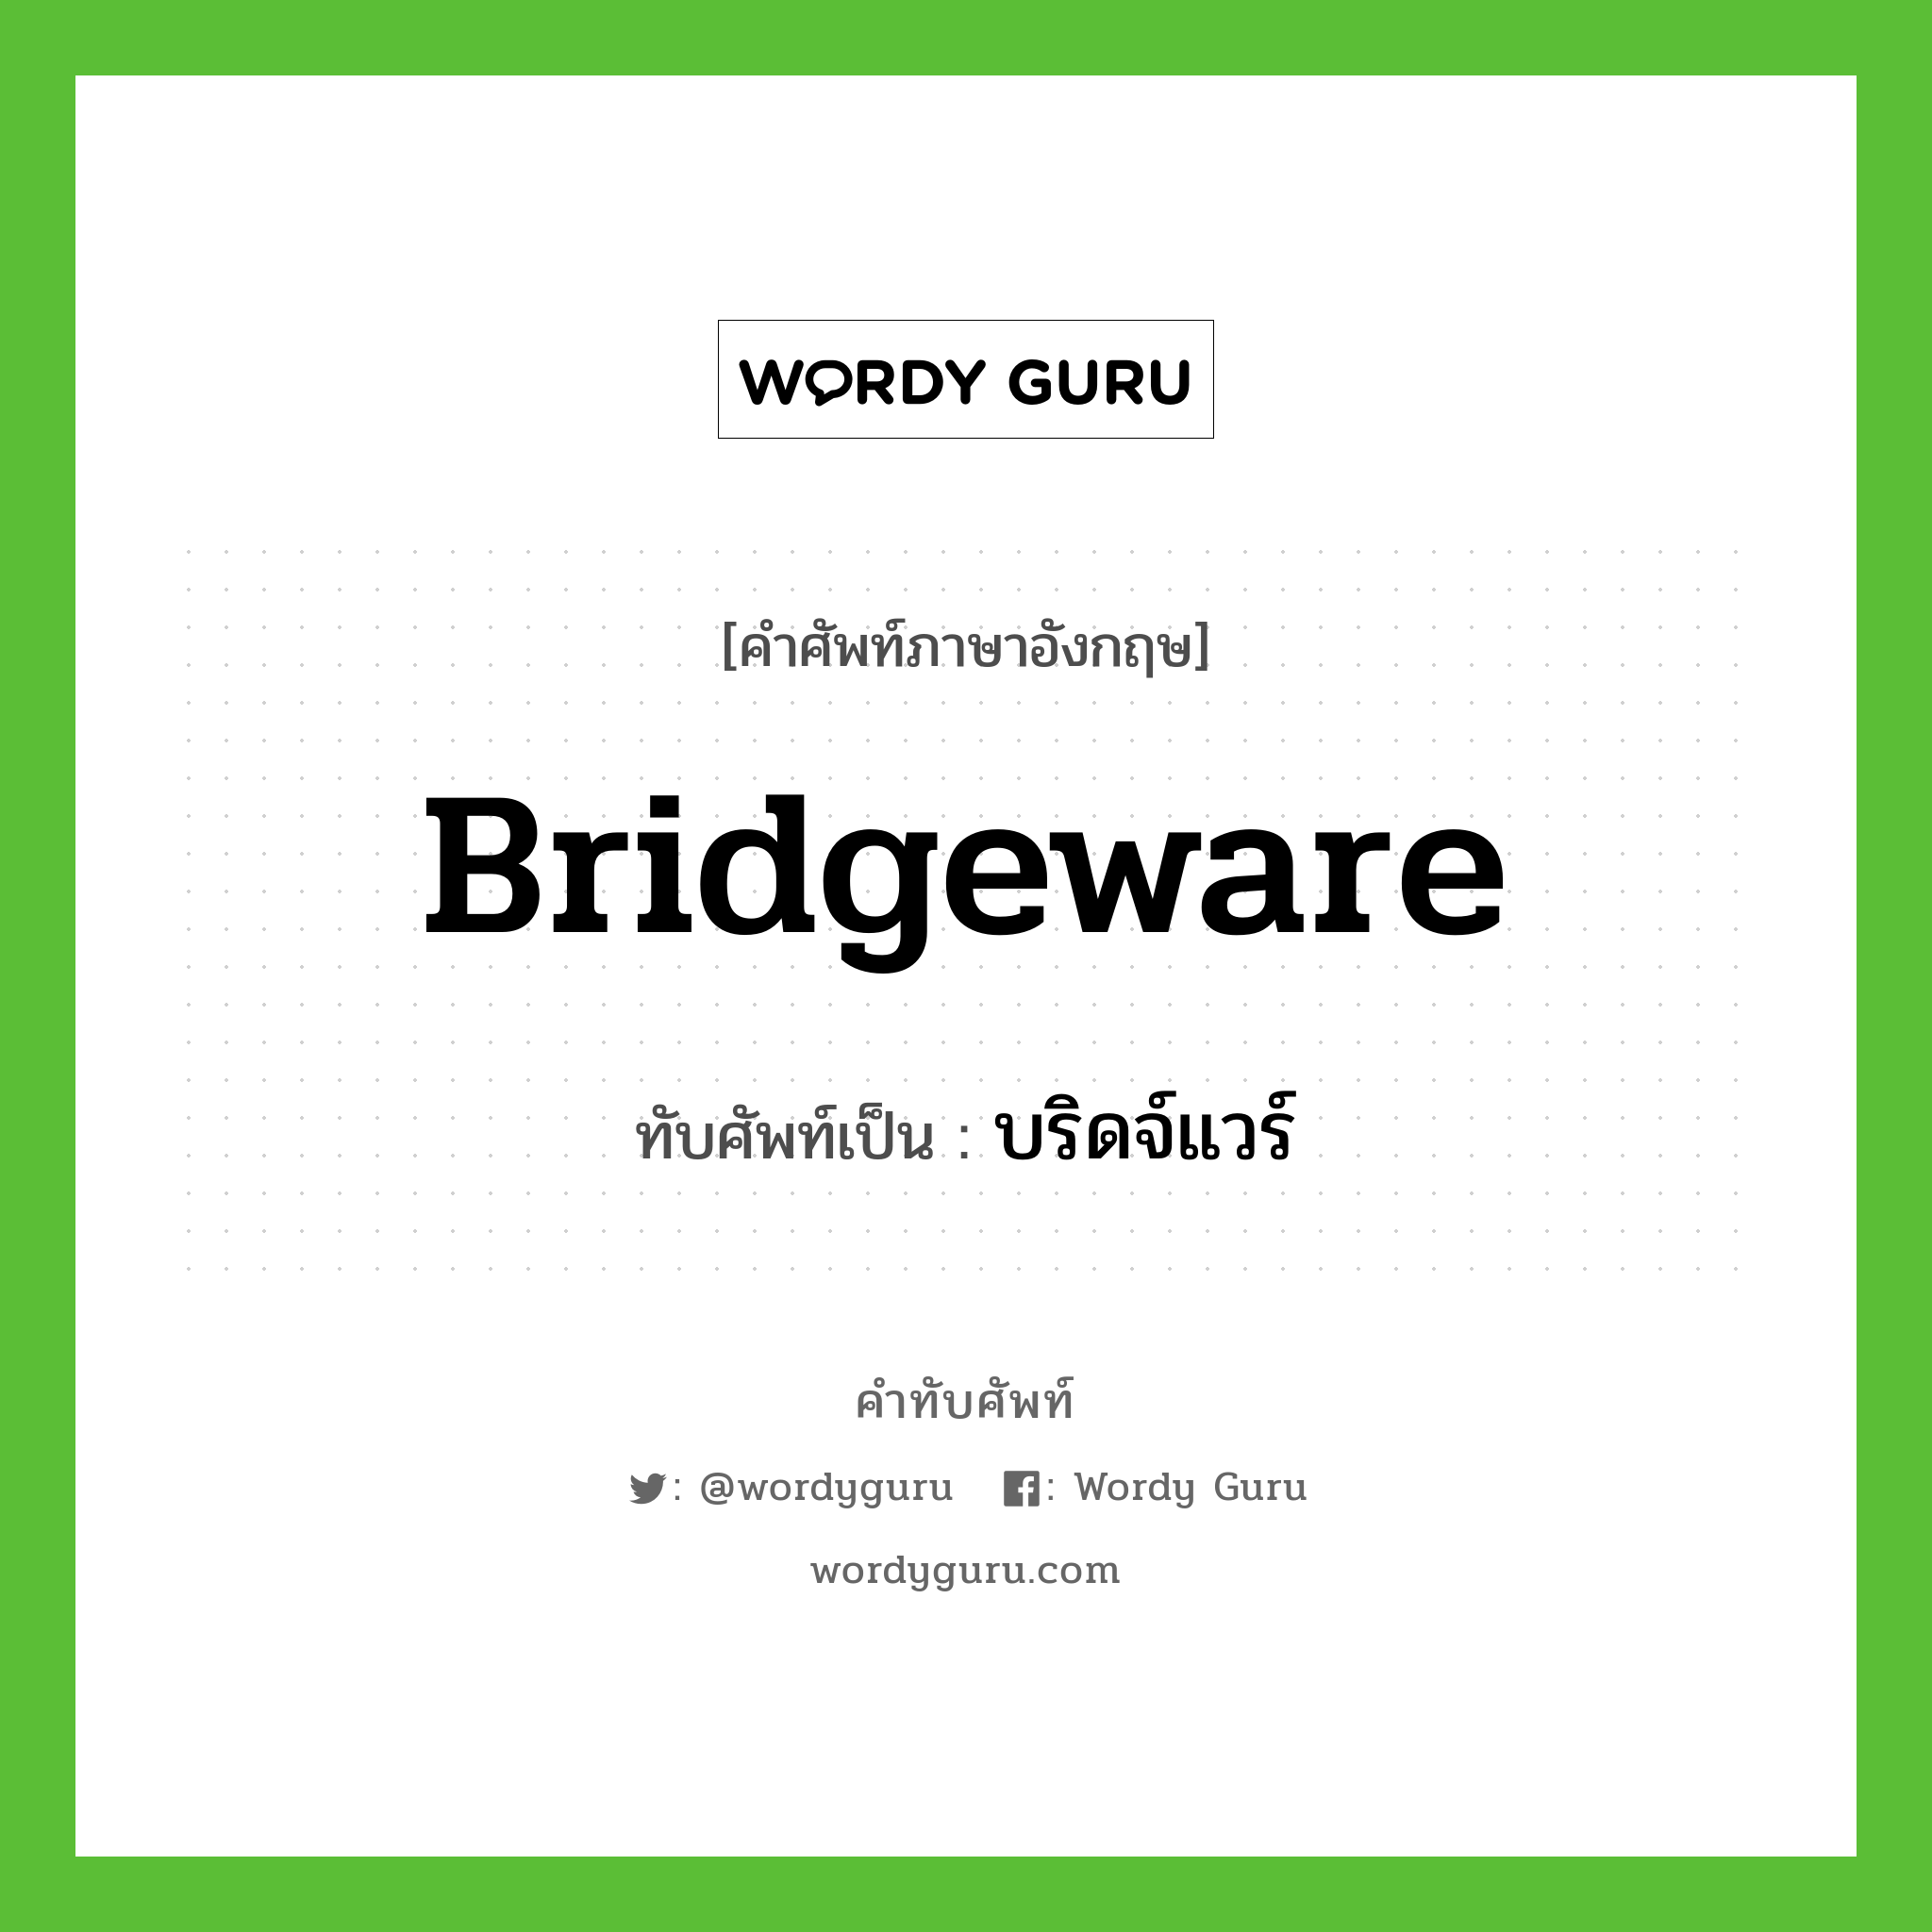 bridgeware เขียนเป็นคำไทยว่าอะไร?, คำศัพท์ภาษาอังกฤษ bridgeware ทับศัพท์เป็น บริดจ์แวร์